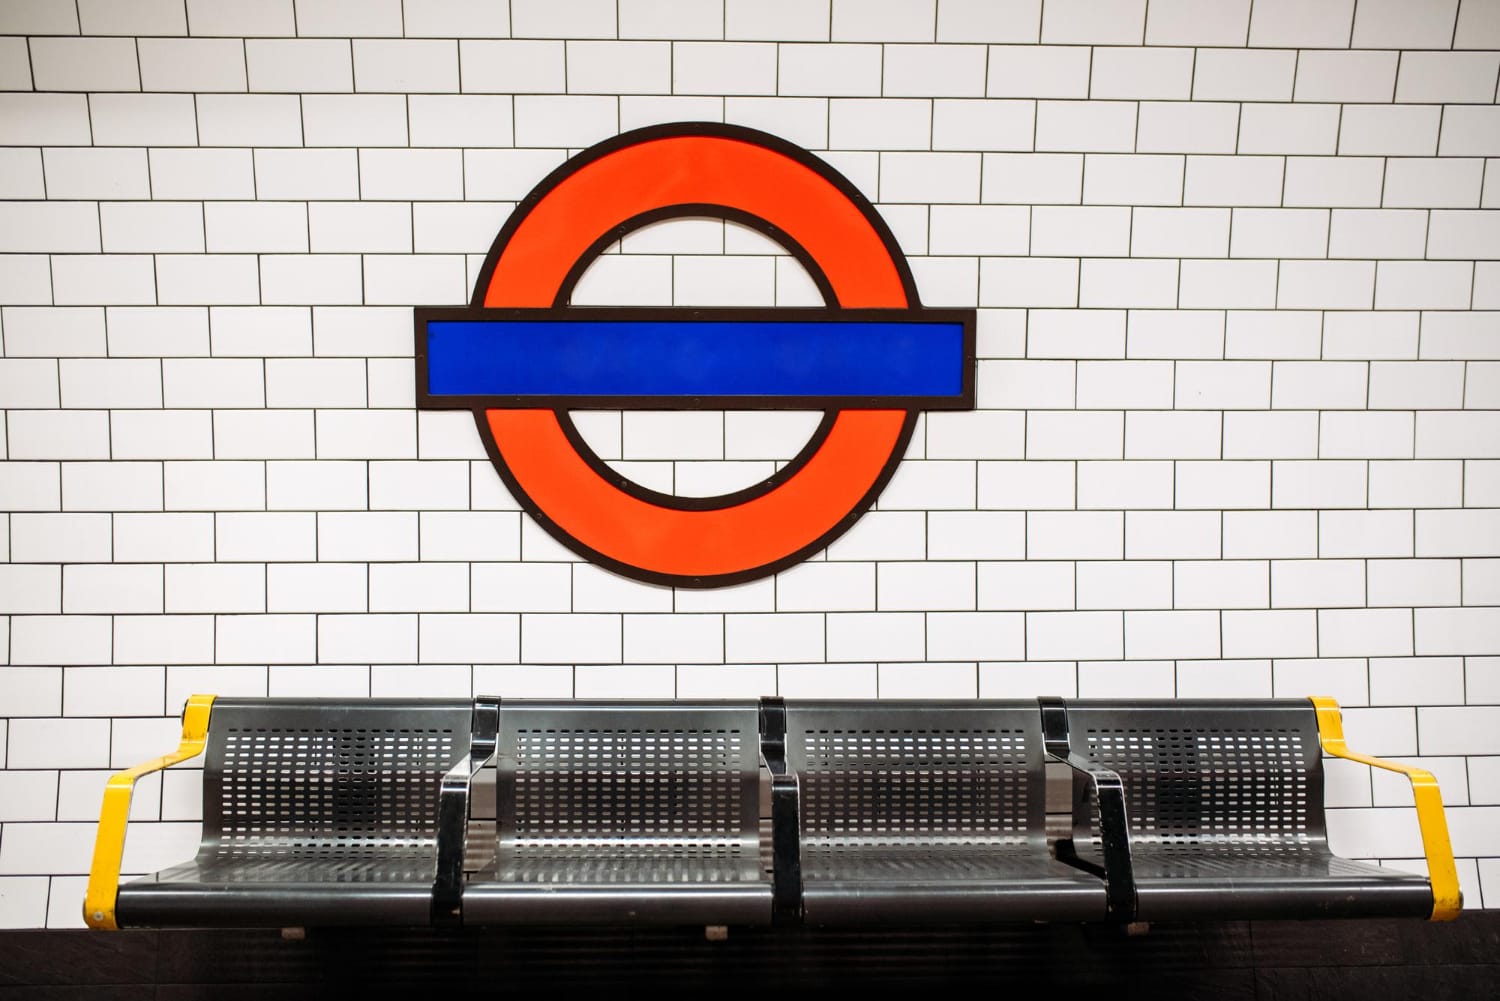 Honnan kapták London metró megállói a nevüket? - 2. rész